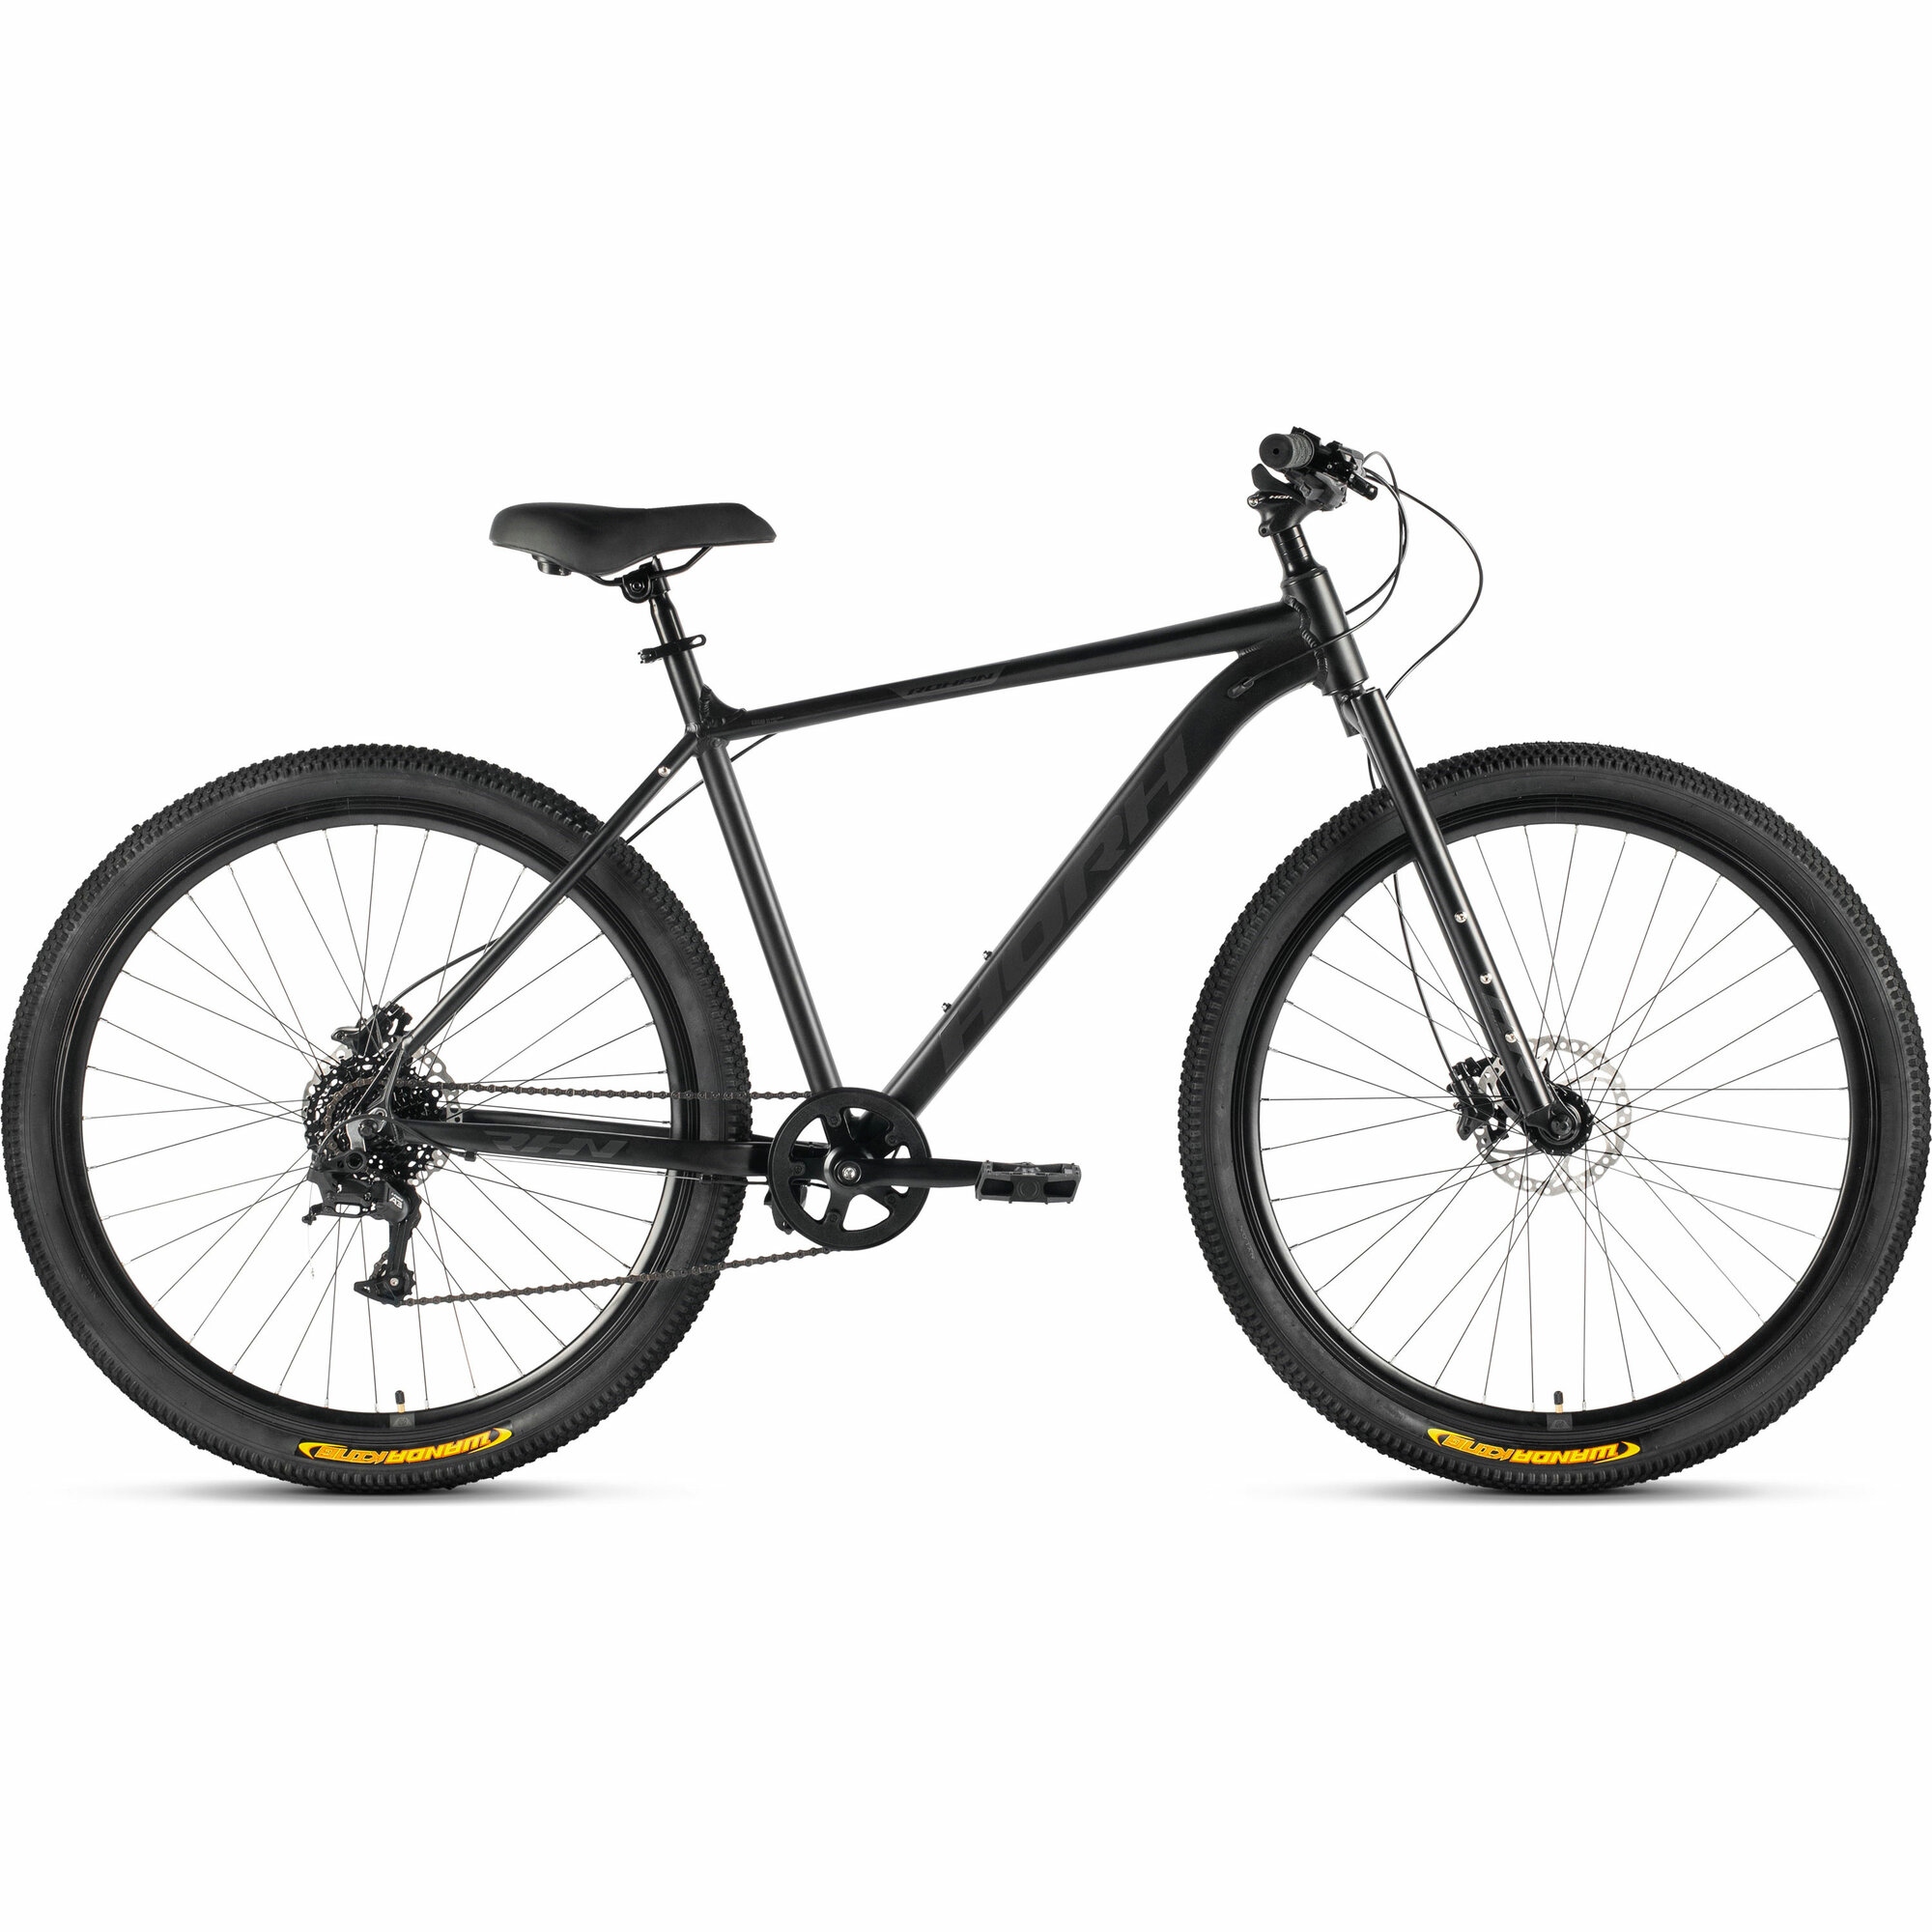 Велосипед горный HORH ROHAN RHD 9.1R 29" (2024), ригид, взрослый, мужской, алюминиевая рама, 8 скоростей, дисковые гидравлические тормоза, цвет Black-Grey, черный/серый цвет, размер рамы 19", для роста 180-190 см